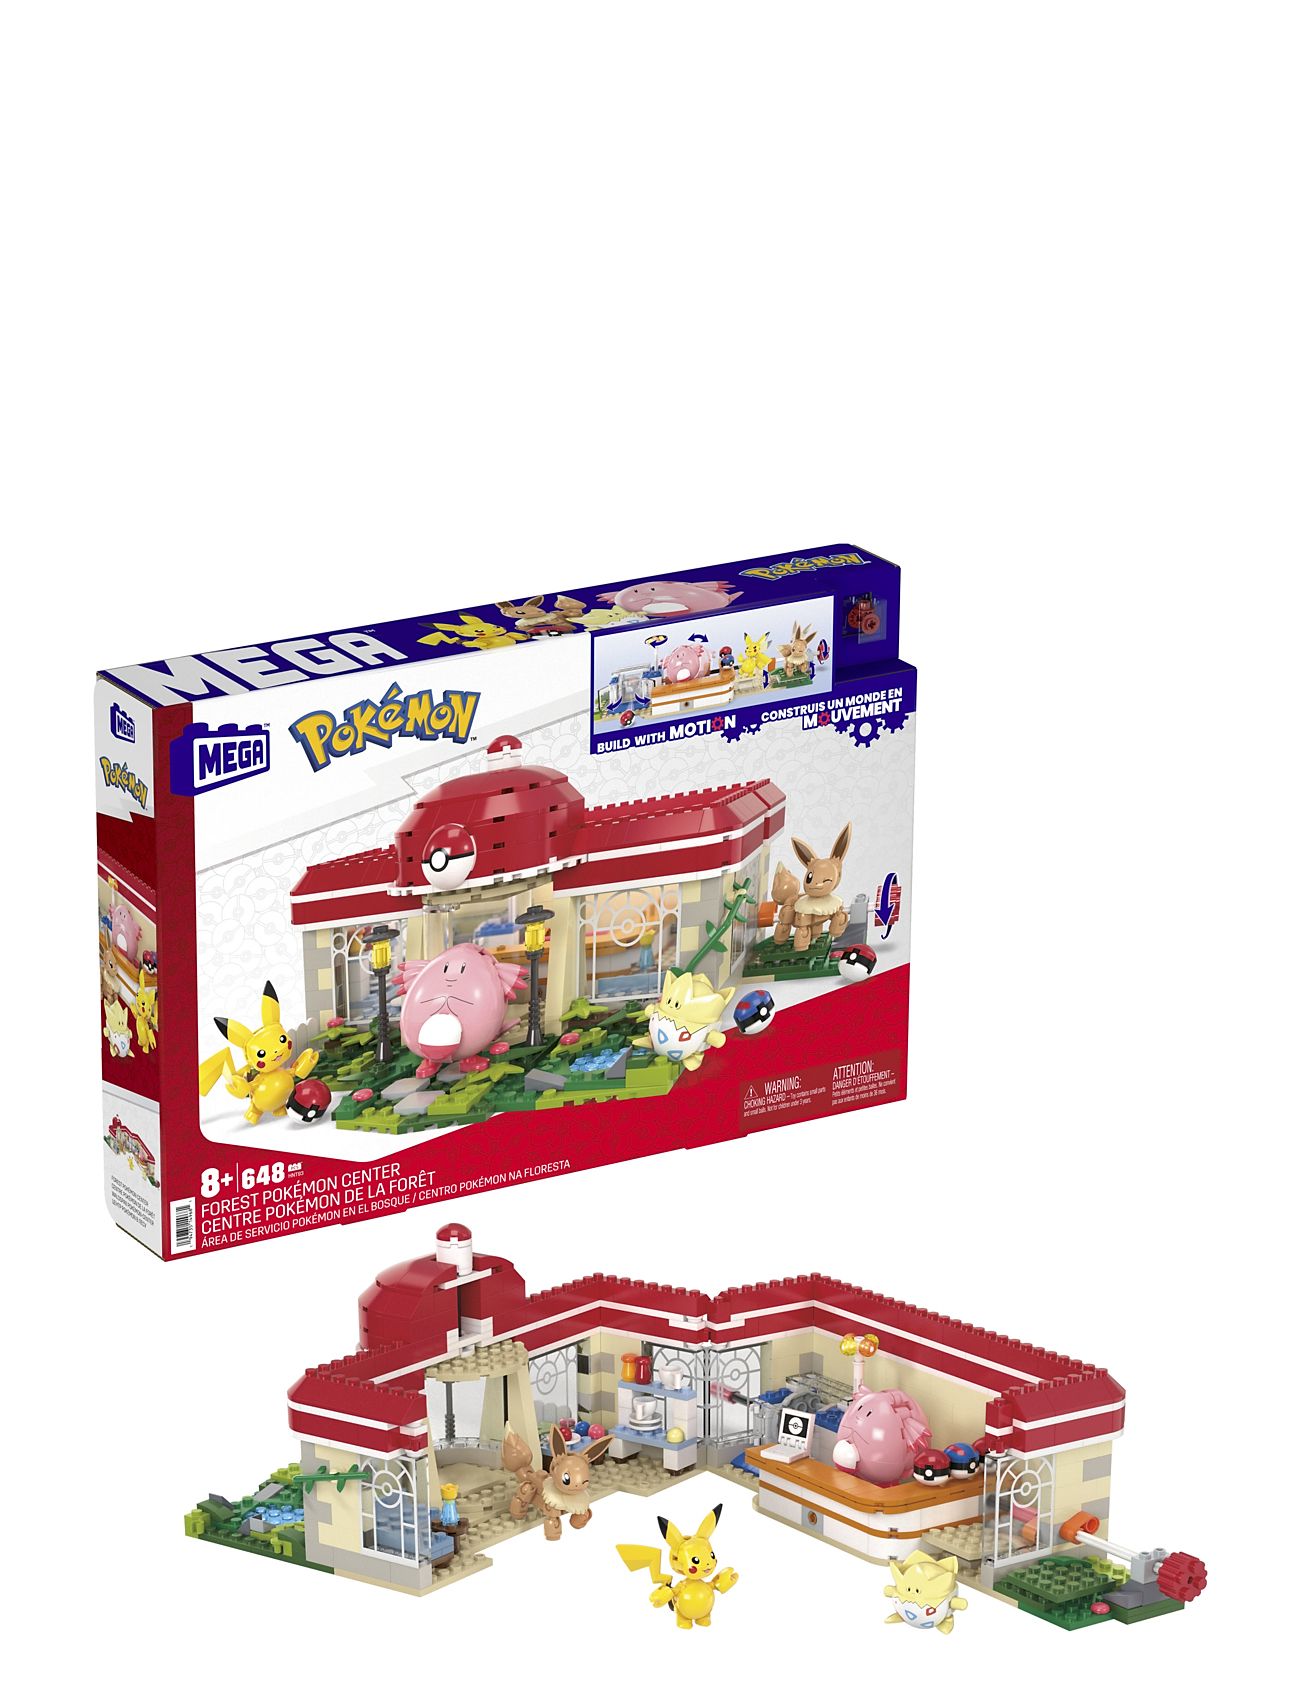 Pokémon Building Toy Toys Playsets & Action Figures Play Sets Multi/patterned MEGA Pokémon